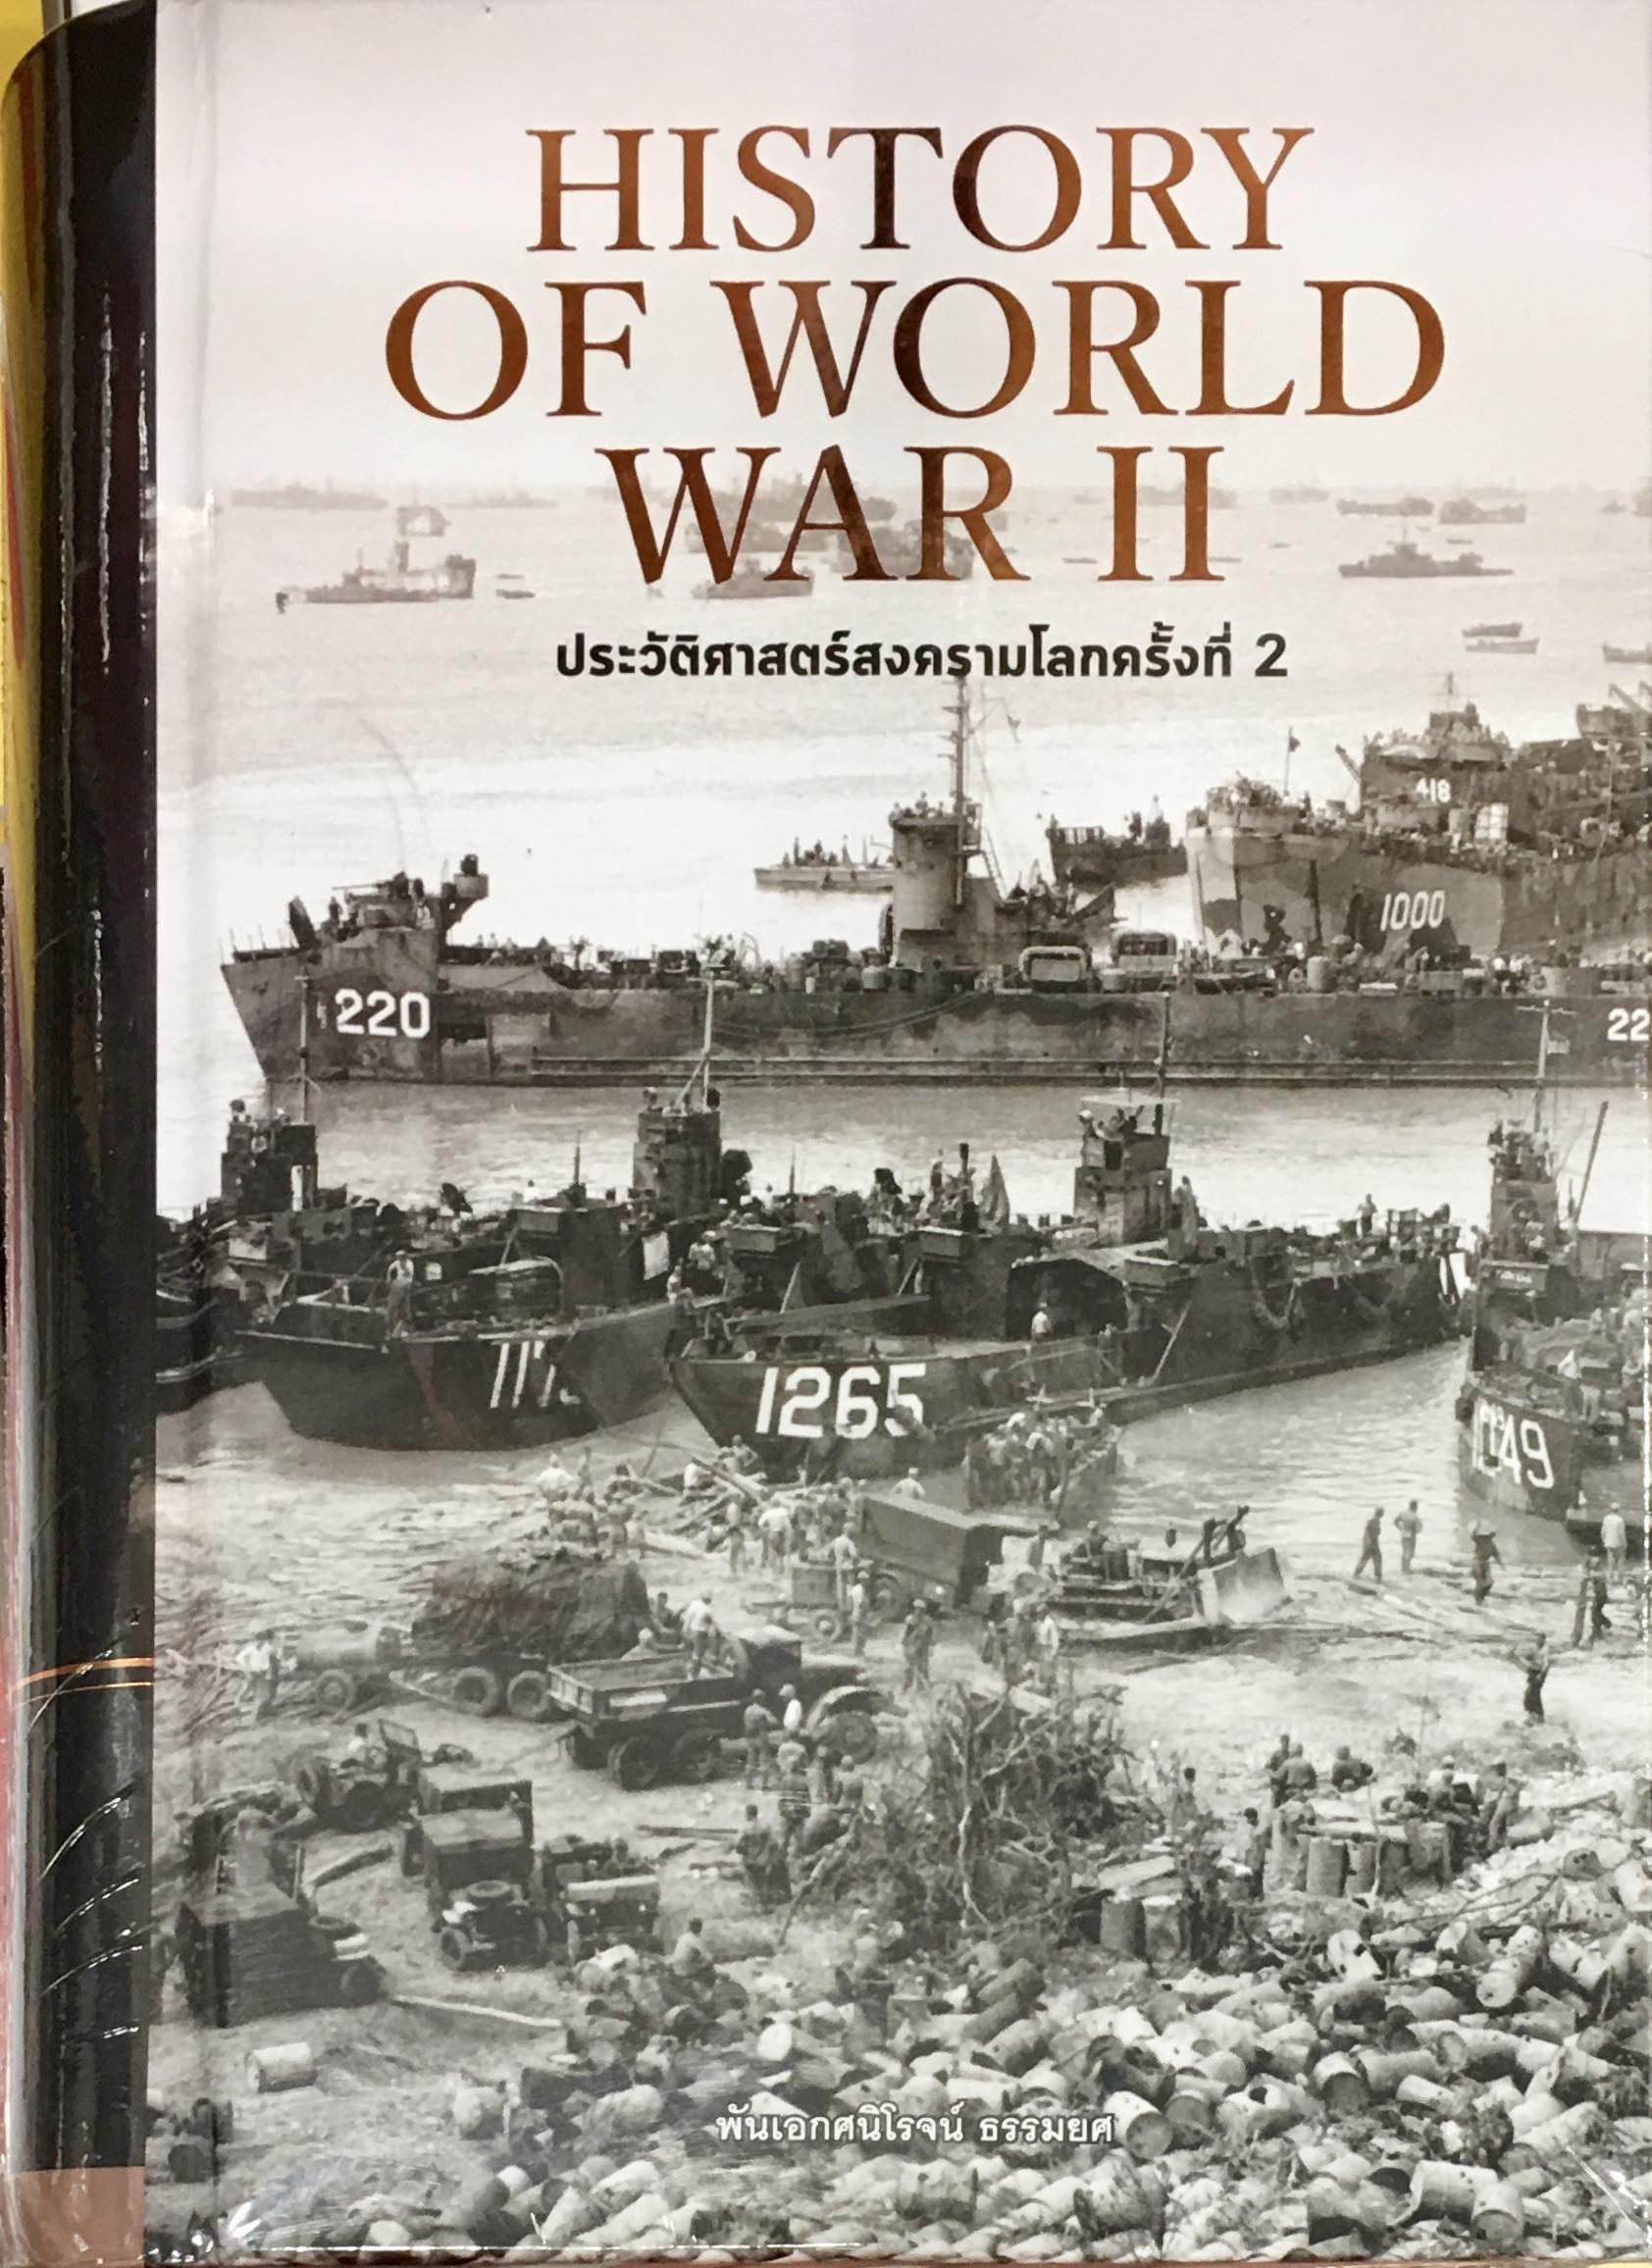 HISTORY OF WORLD WAR II  ประวัติศาสตร์สงครามโลก ครั้งที่ 2 (ปกแข็ง)